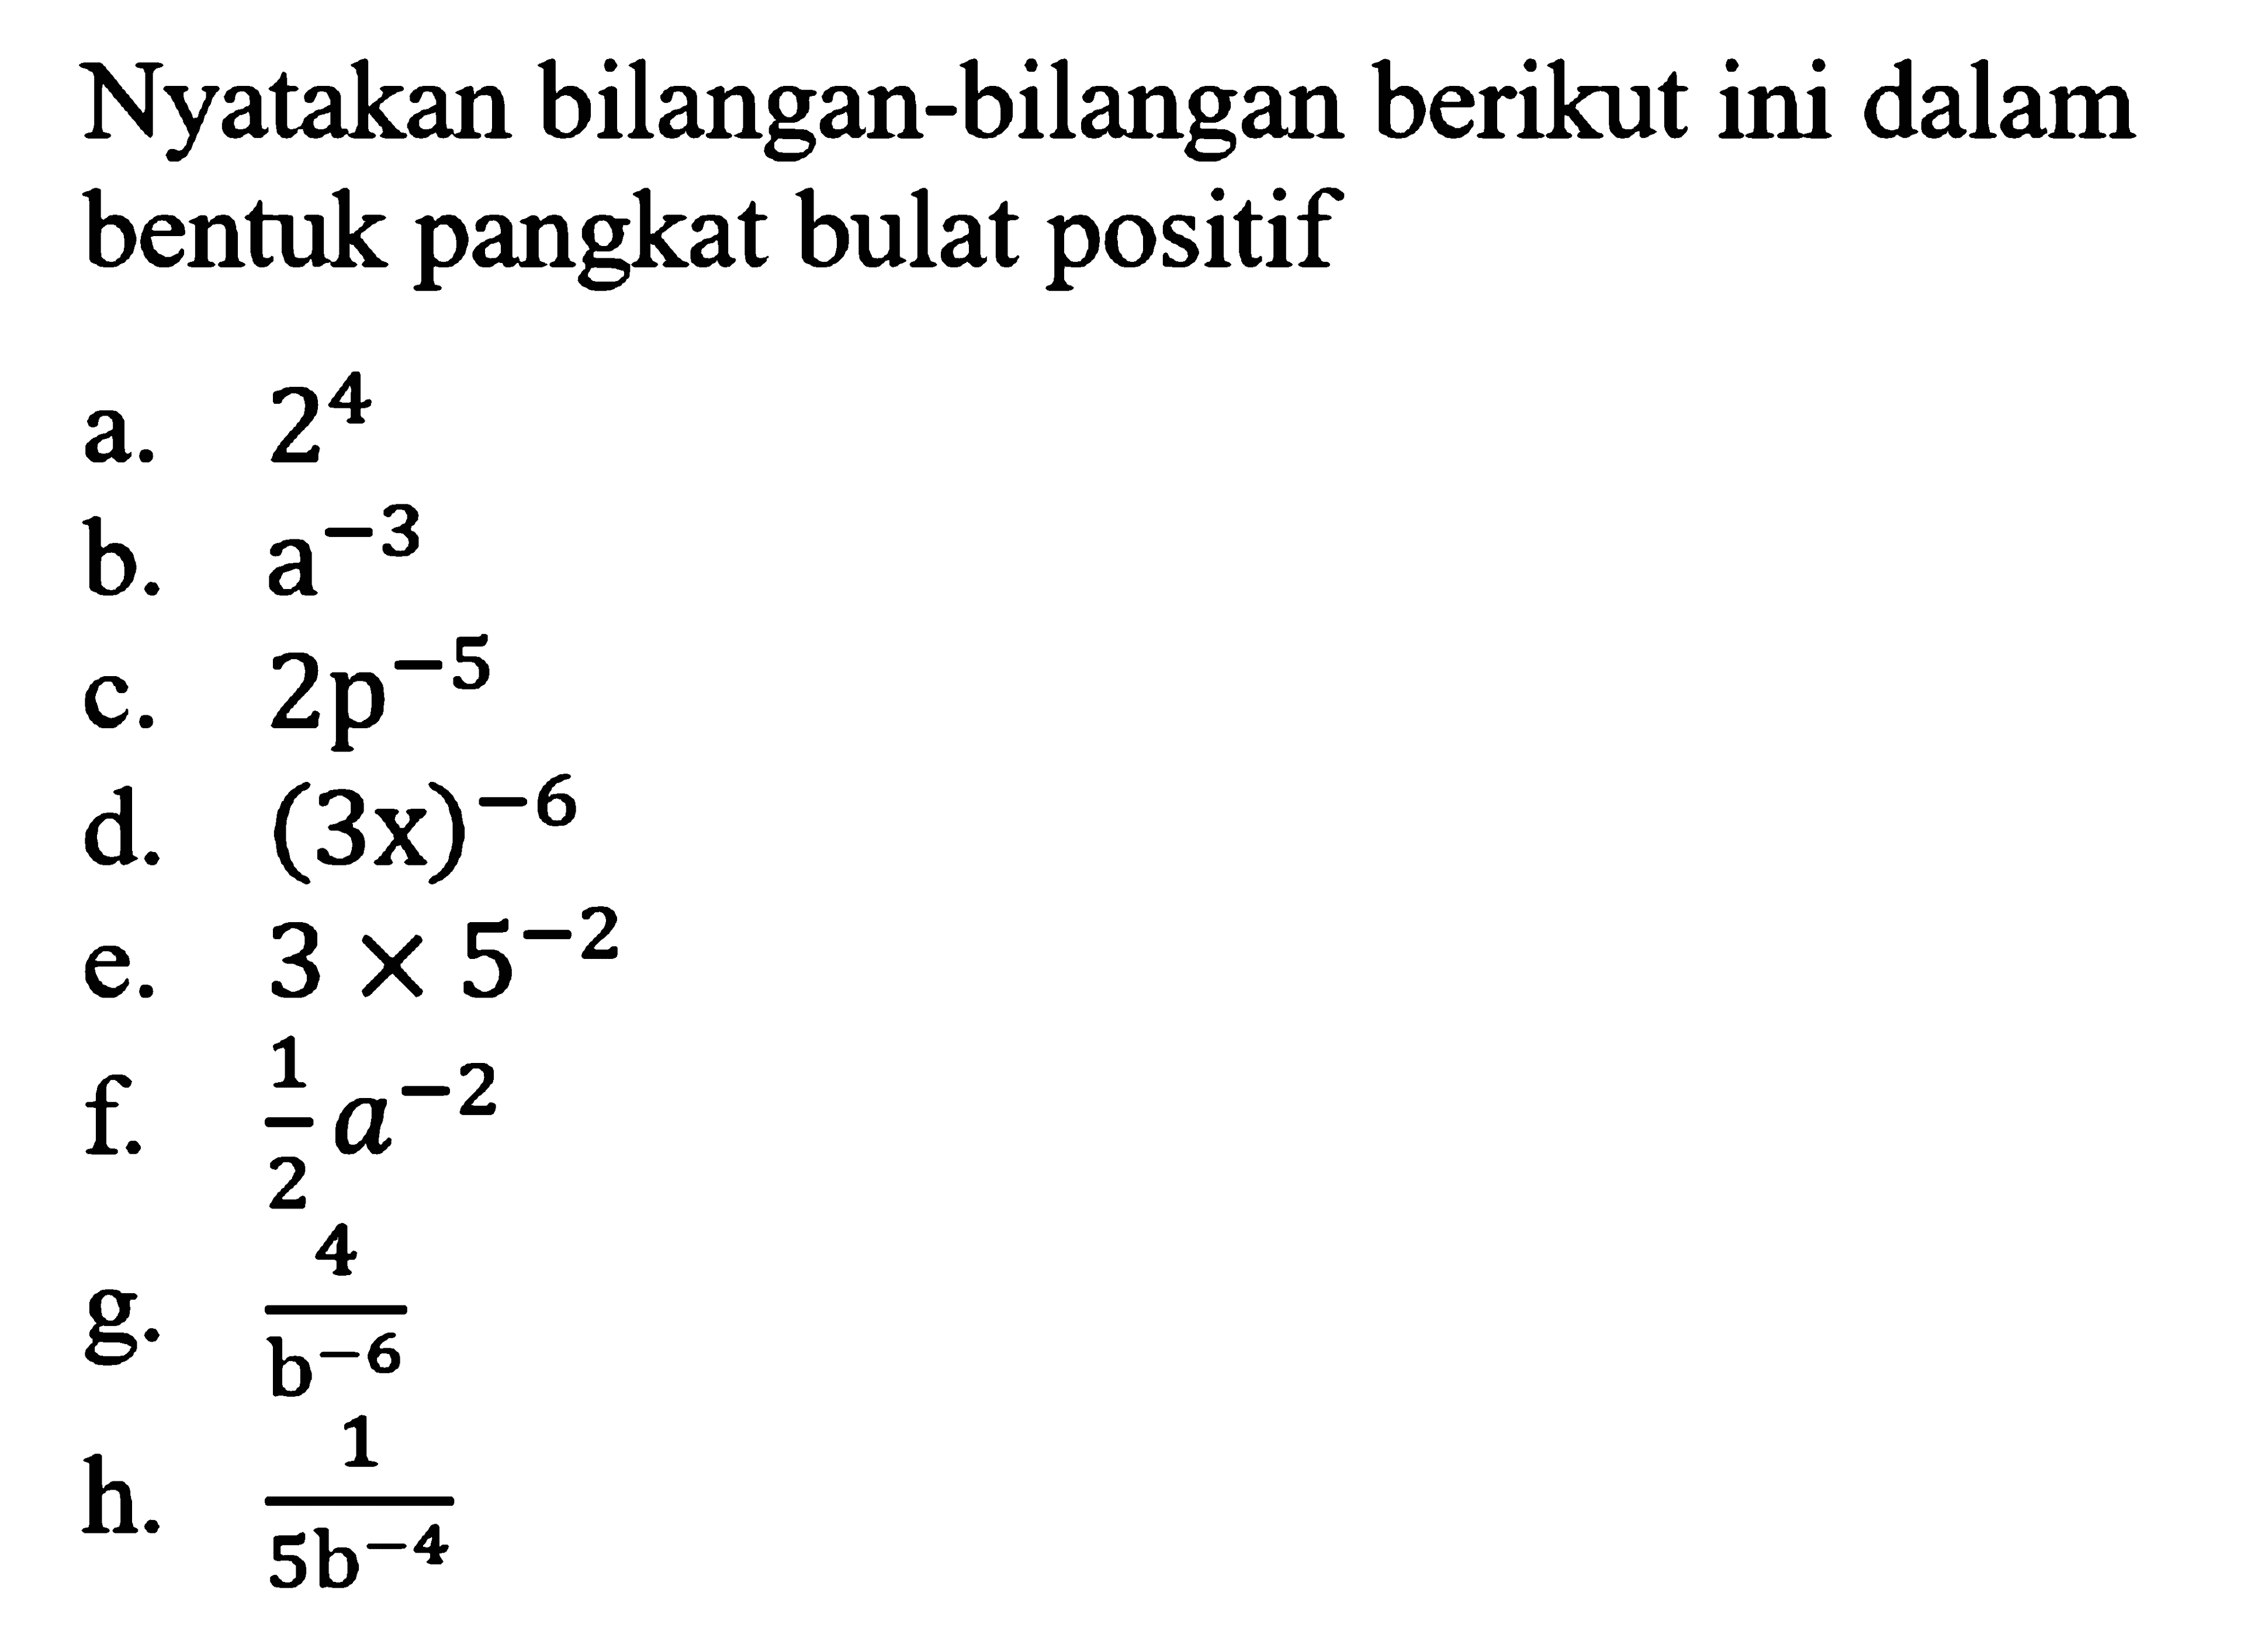 Nyatakan bilangan-bilangan berikut ini dalam bentuk pangkat bulat positif a. 2^4 b. a^-3 c.2p^-5 d.(3x)^-6 e.3X 5^-2 f. 1/2a^-2 g. 4/b^-6 h. 1/5b^-4